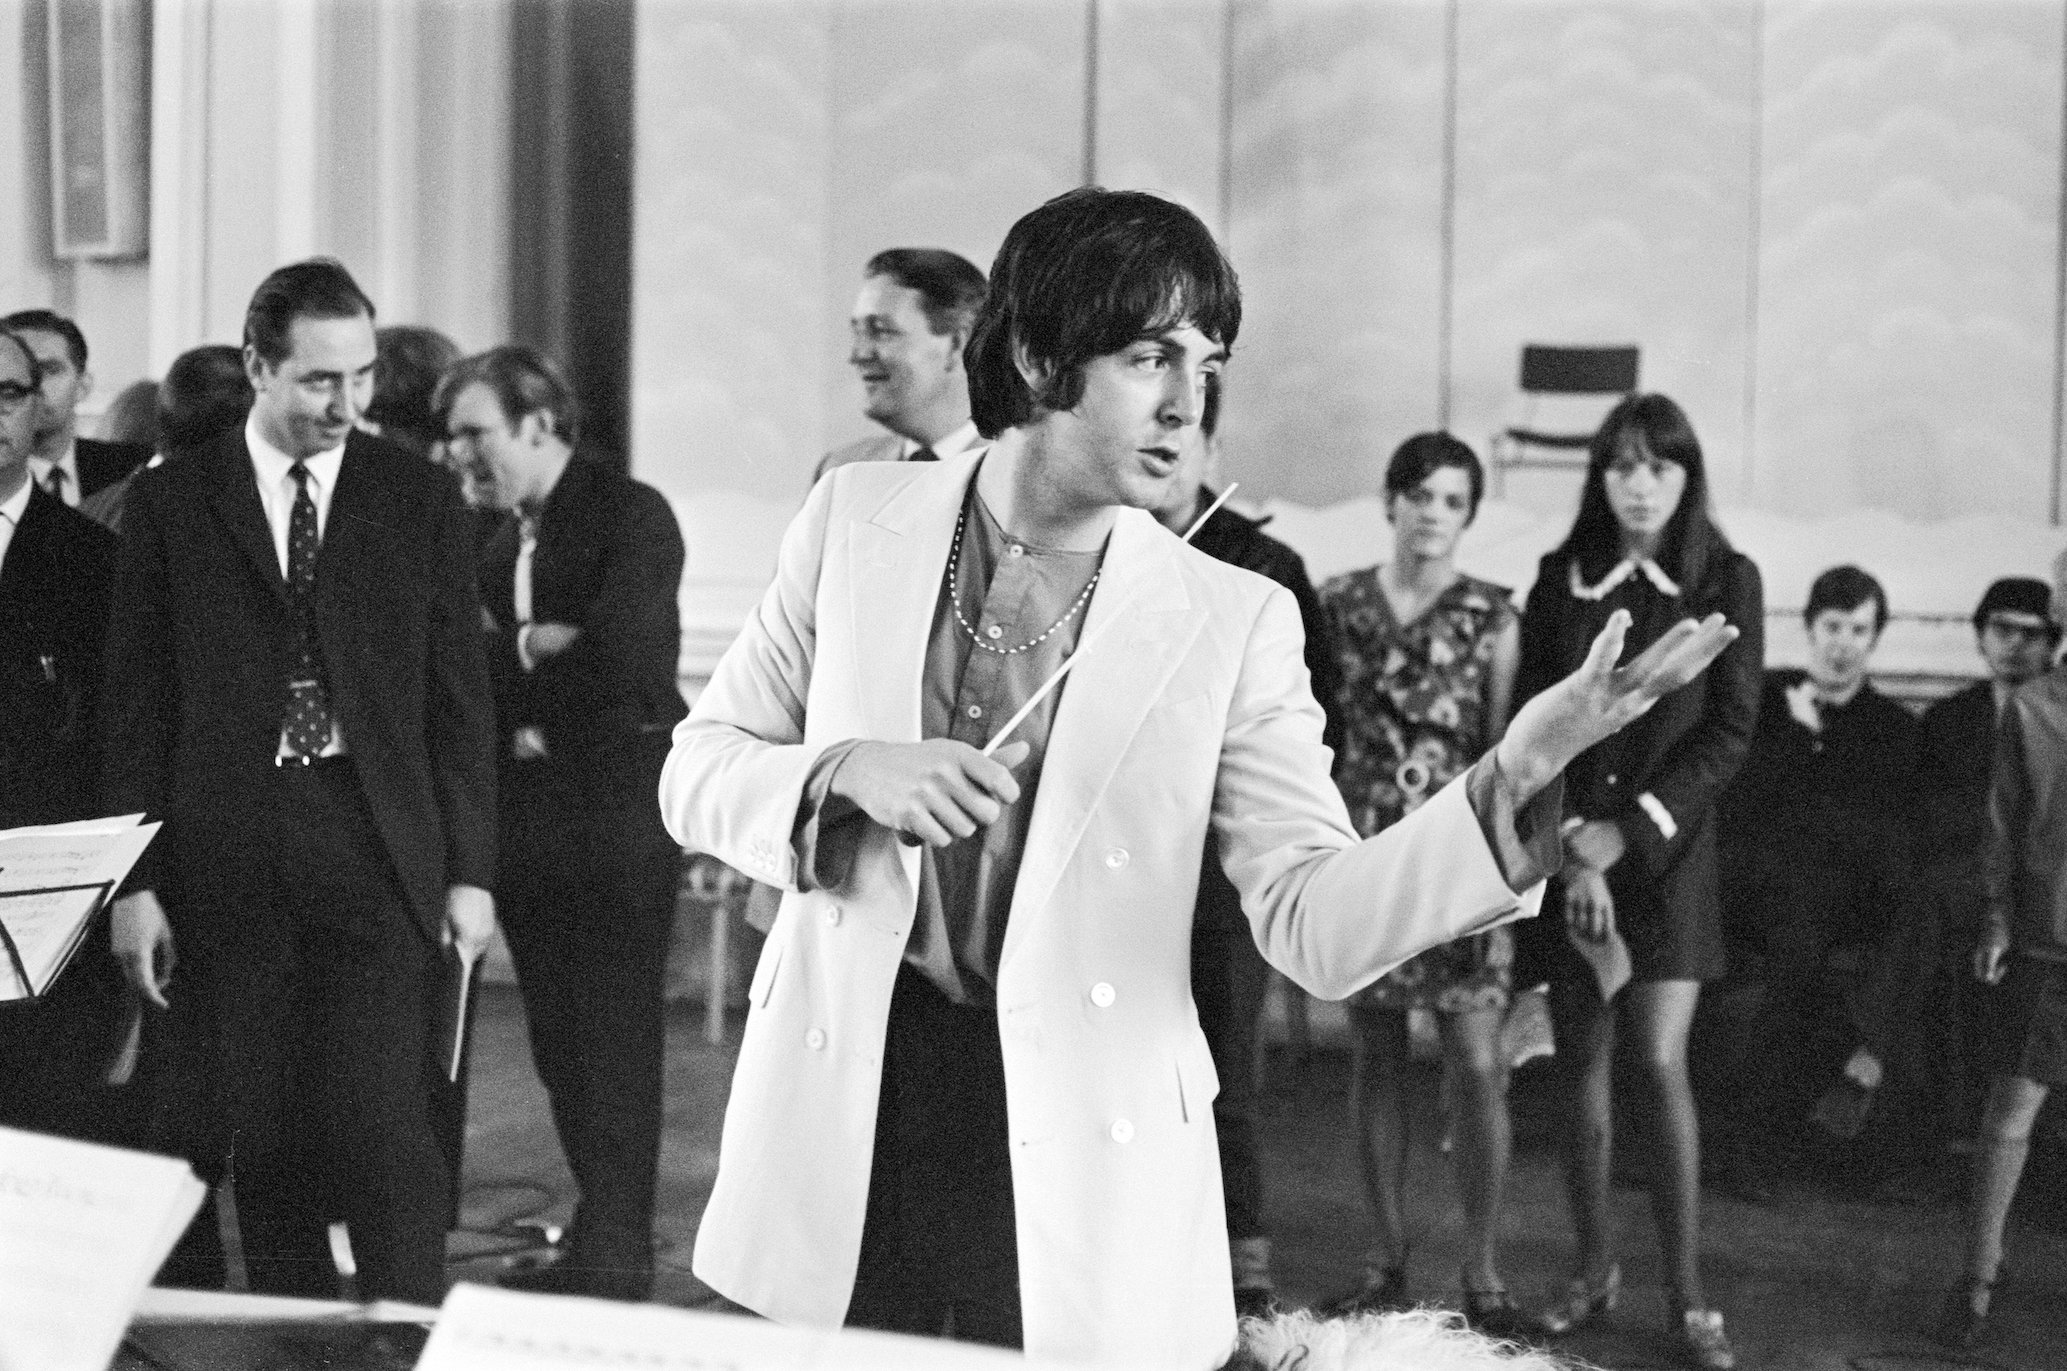 Bài hát của The Beatles mà Paul McCartney nói đã hoàn thiện 'Elvis Echo'